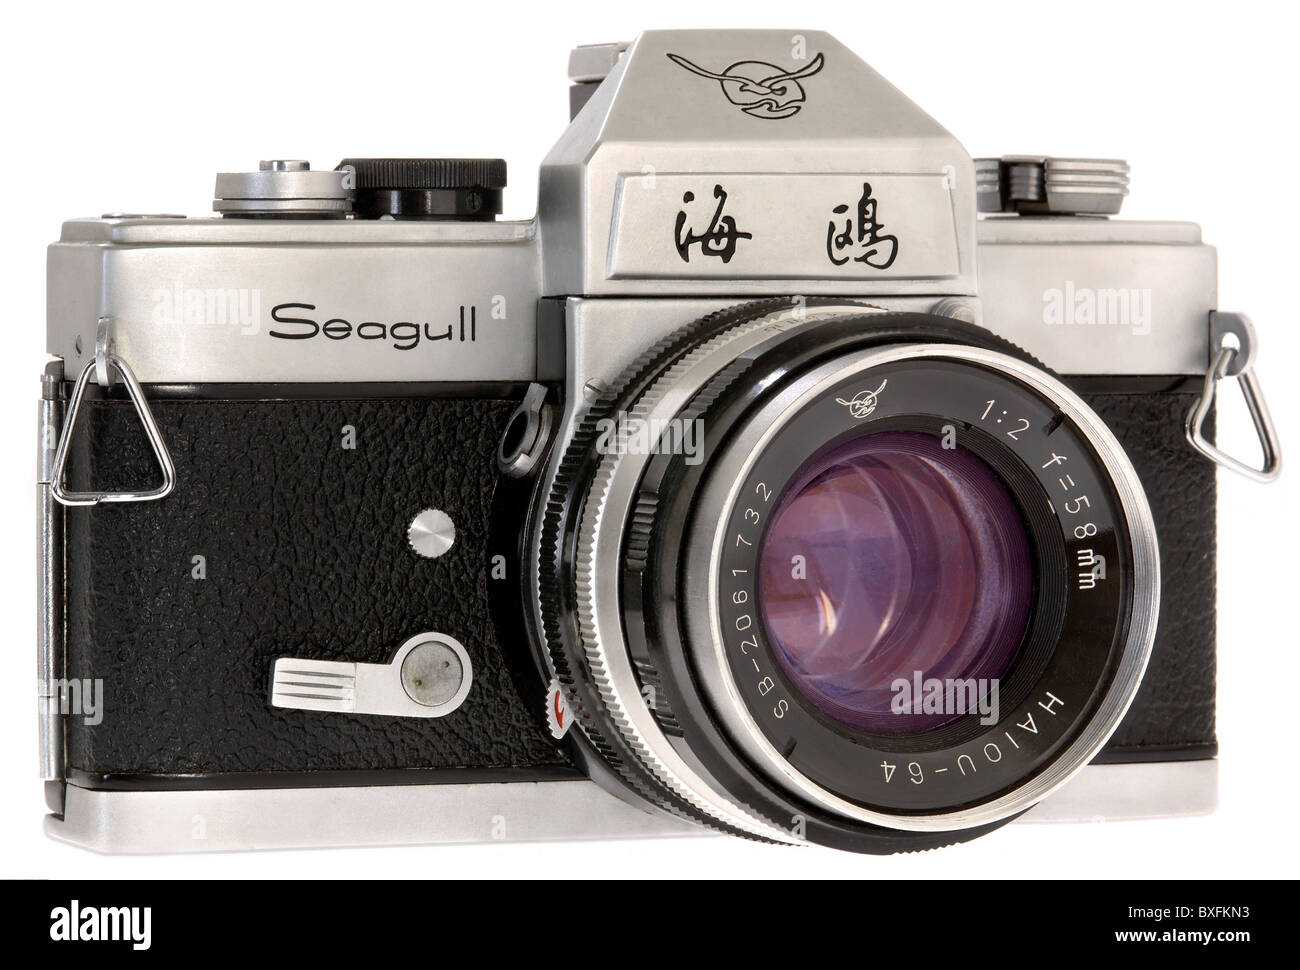 Photographie, appareils photo, appareil photo reflex, Seagull, Chine, vers 1979, droits supplémentaires-Clearences-non disponible Banque D'Images